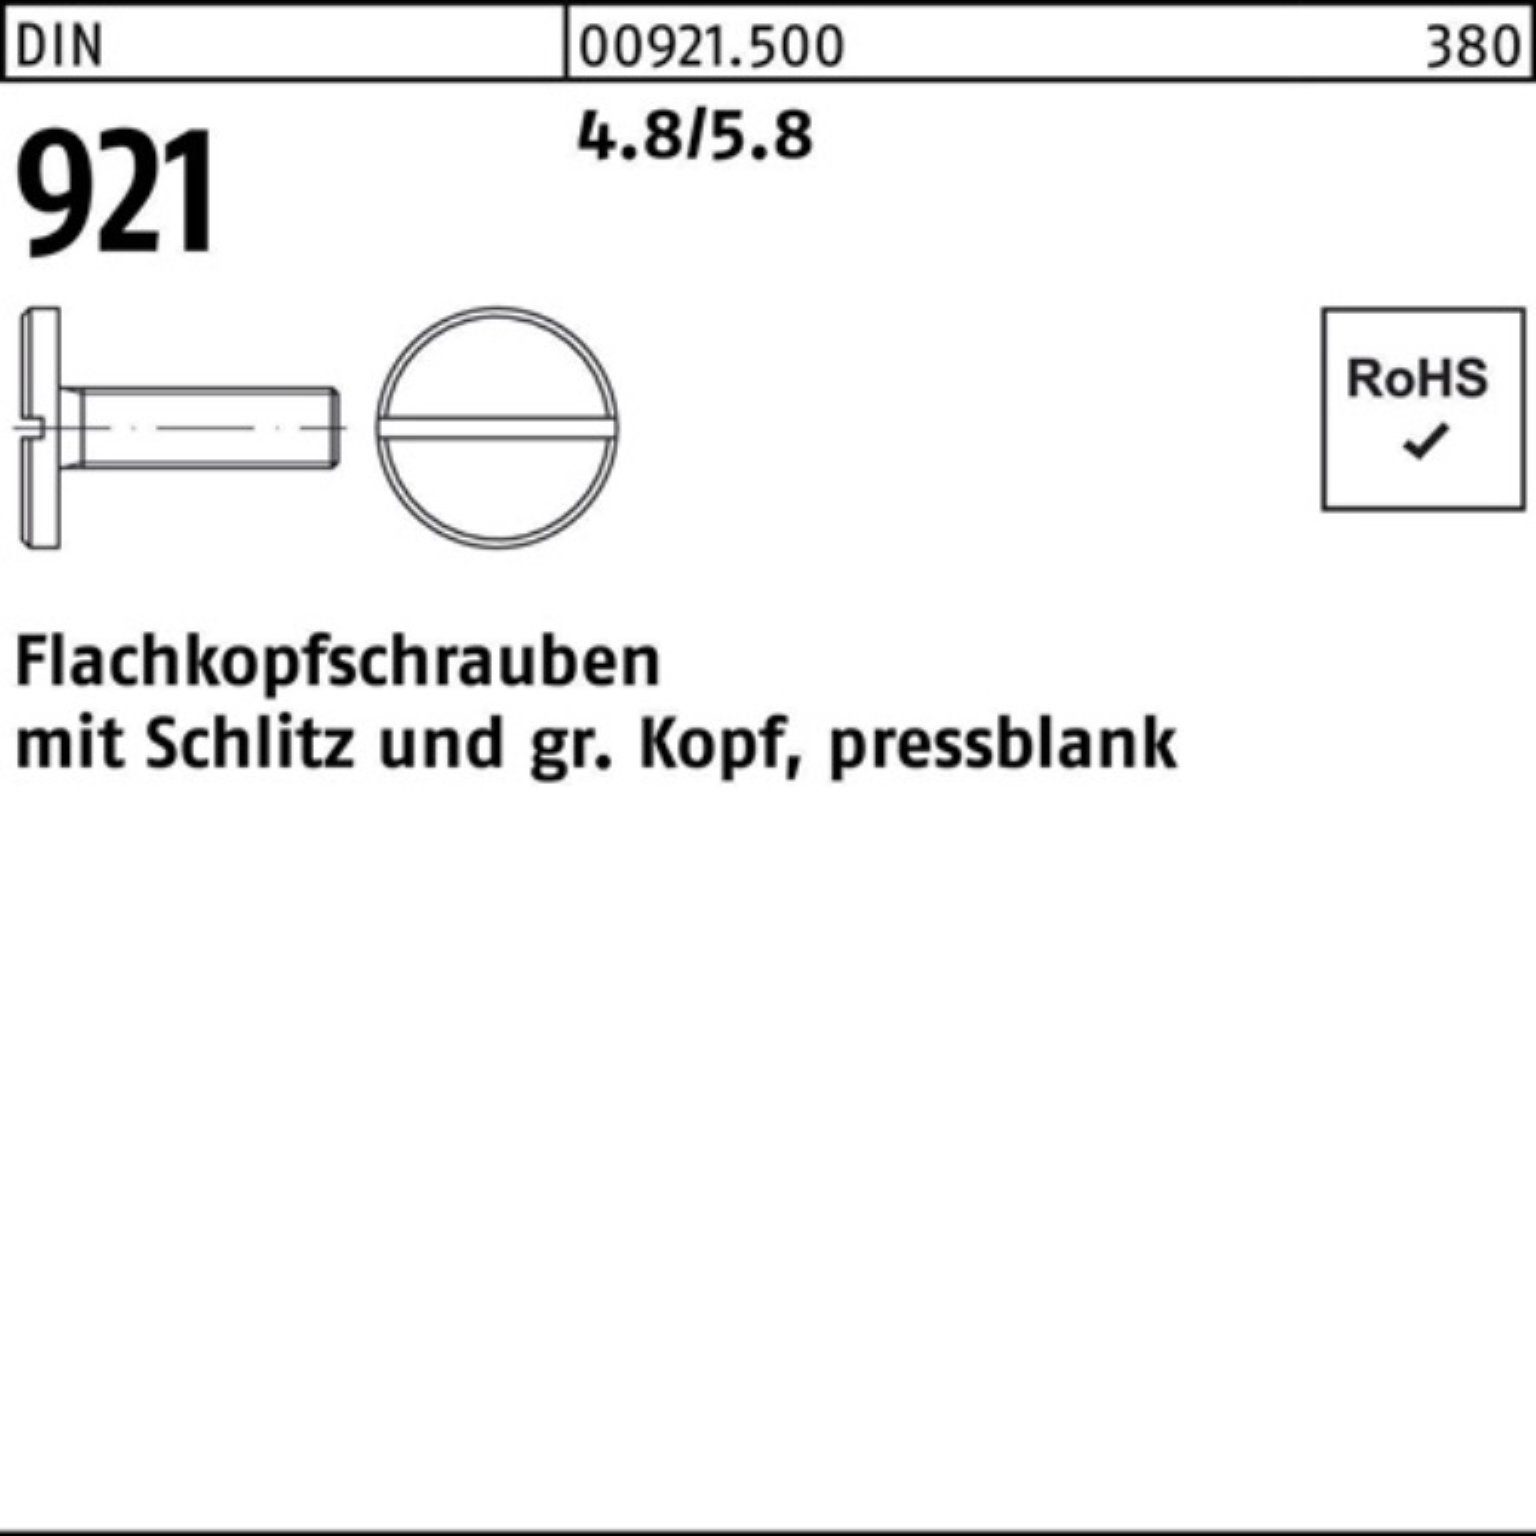 Reyher Schraube 100er Pack Stück 4.8/5.8 Flachkopfschraube Schlitz 921 DIN 10 M8x 100